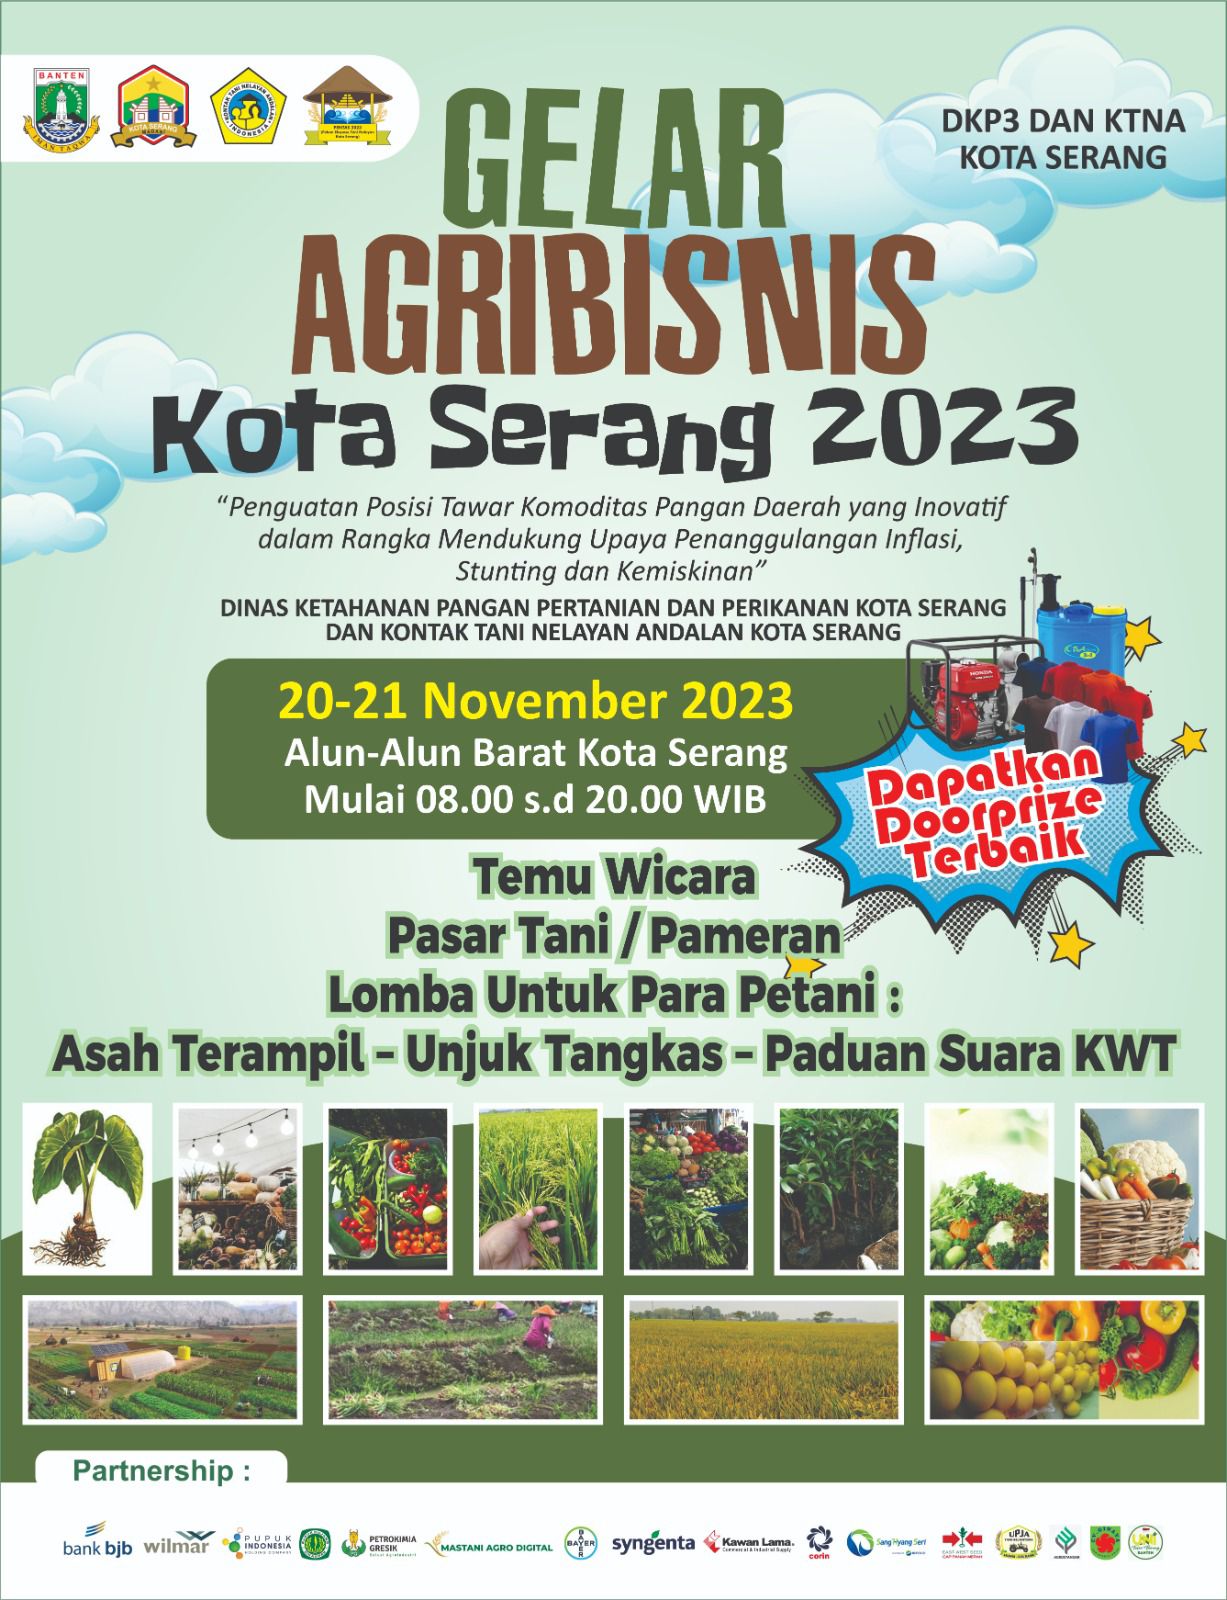 GELAR AGRIBISNIS Kota Serang 20-21 November 2023